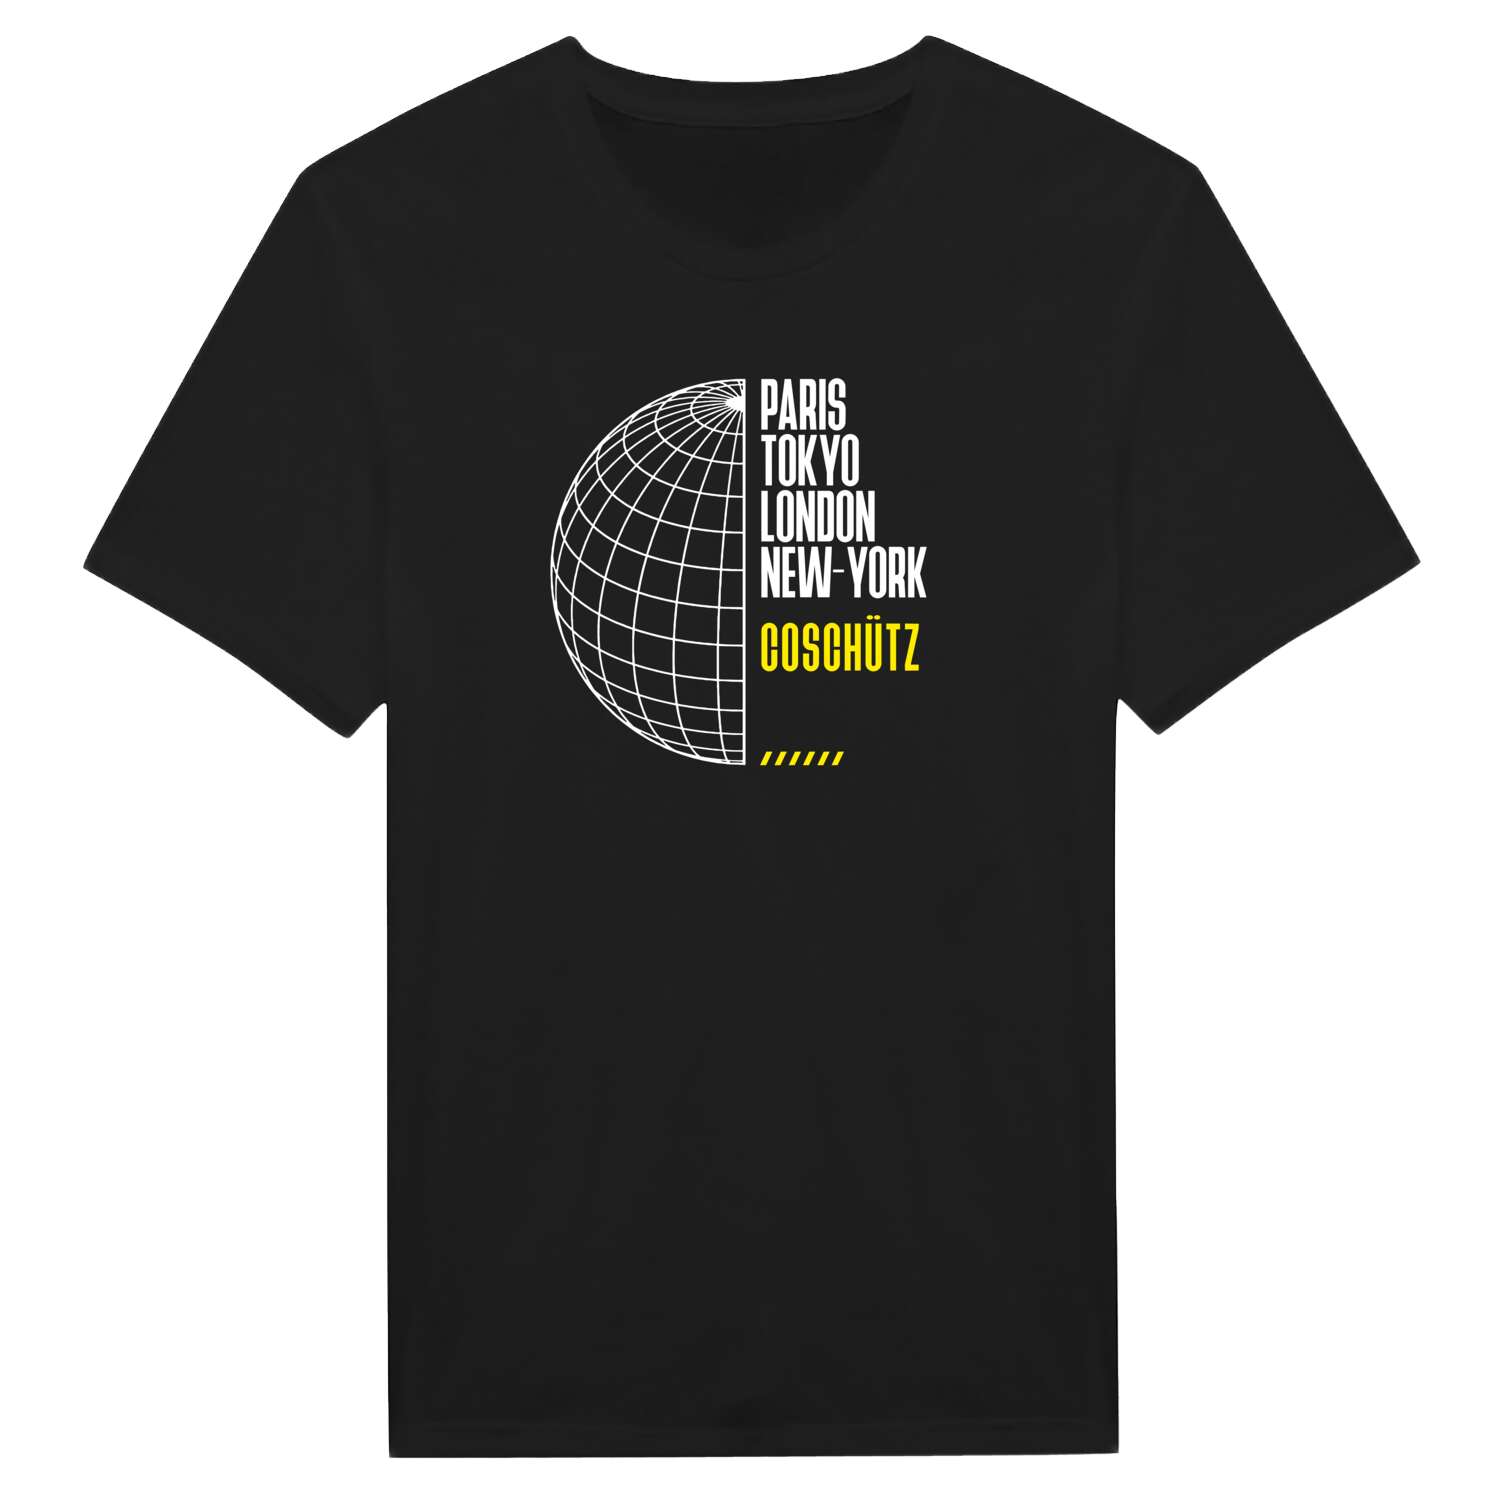 Coschütz T-Shirt »Paris Tokyo London«